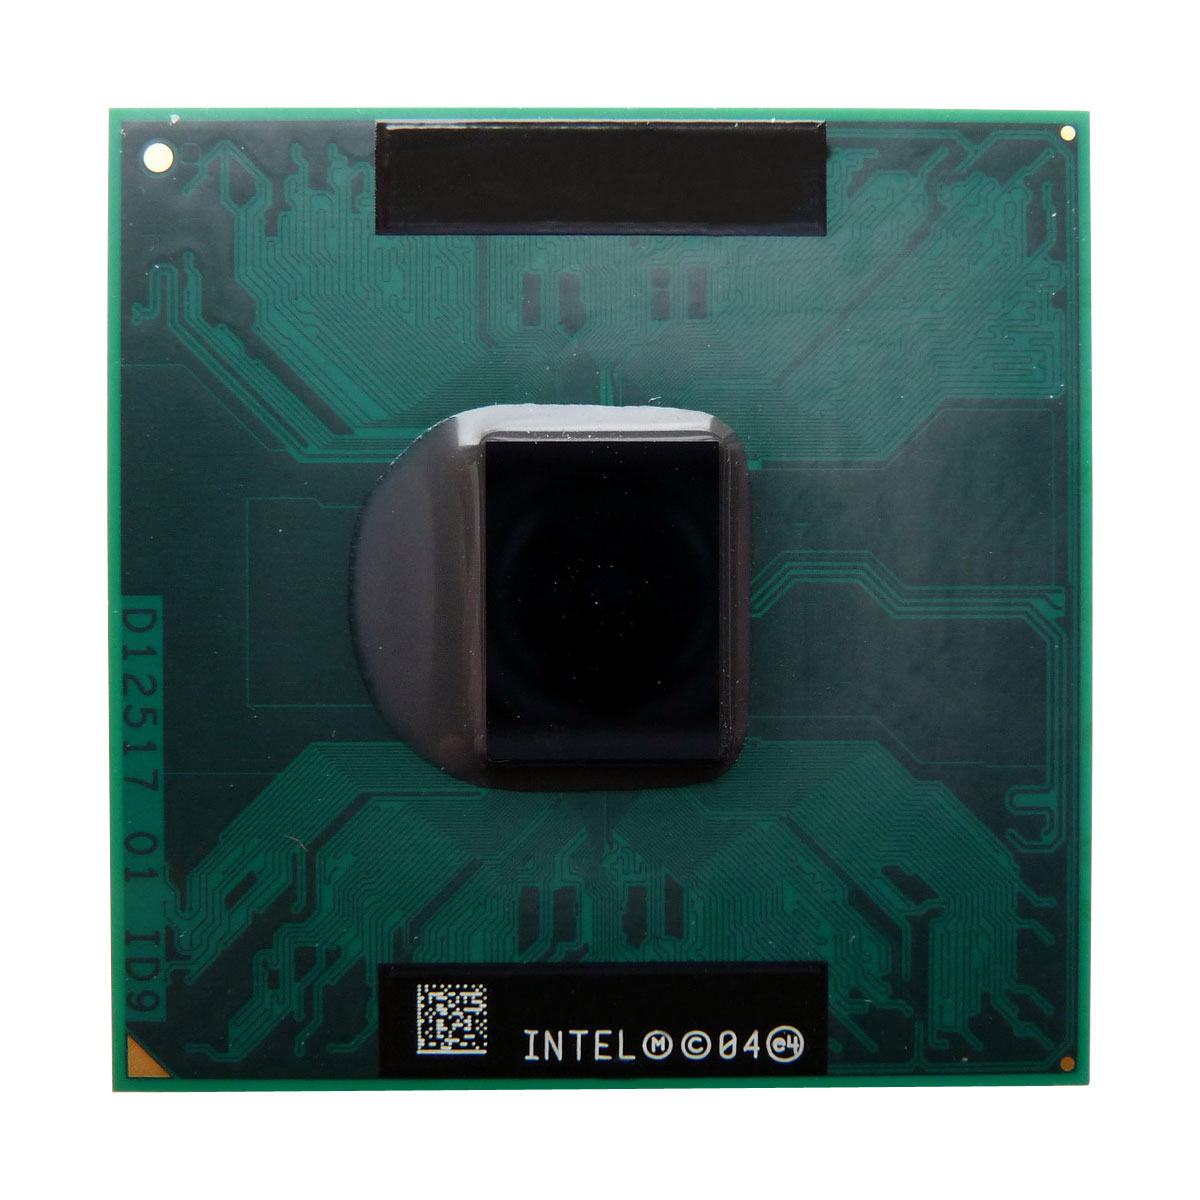 U9625 | Dell 1.83GHz 667MHz FSB 2MB L2 Cache Intel Core Duo T2400 Dual Core Processor